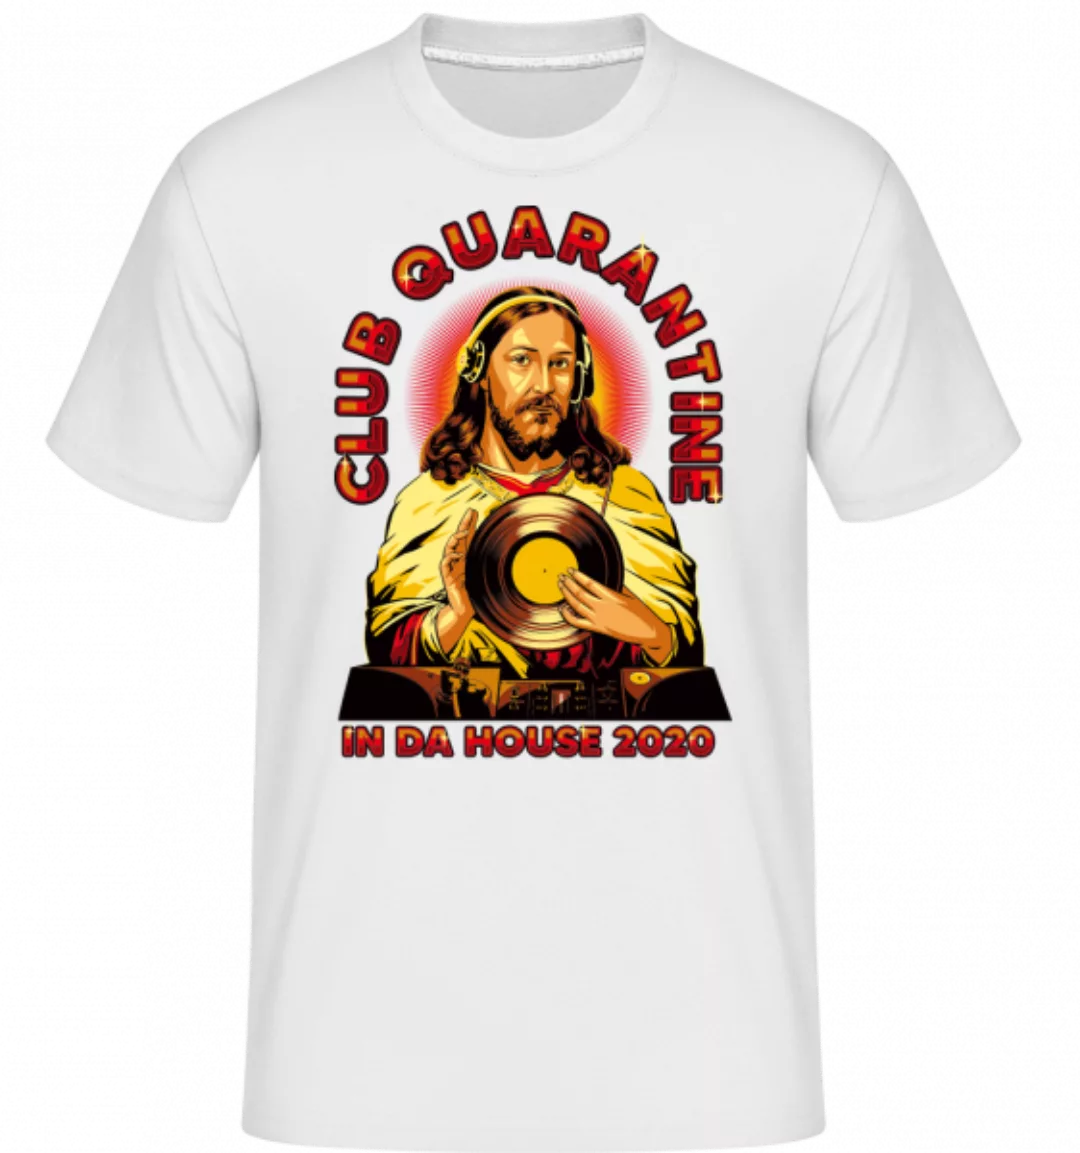 Club Quarantine · Shirtinator Männer T-Shirt günstig online kaufen